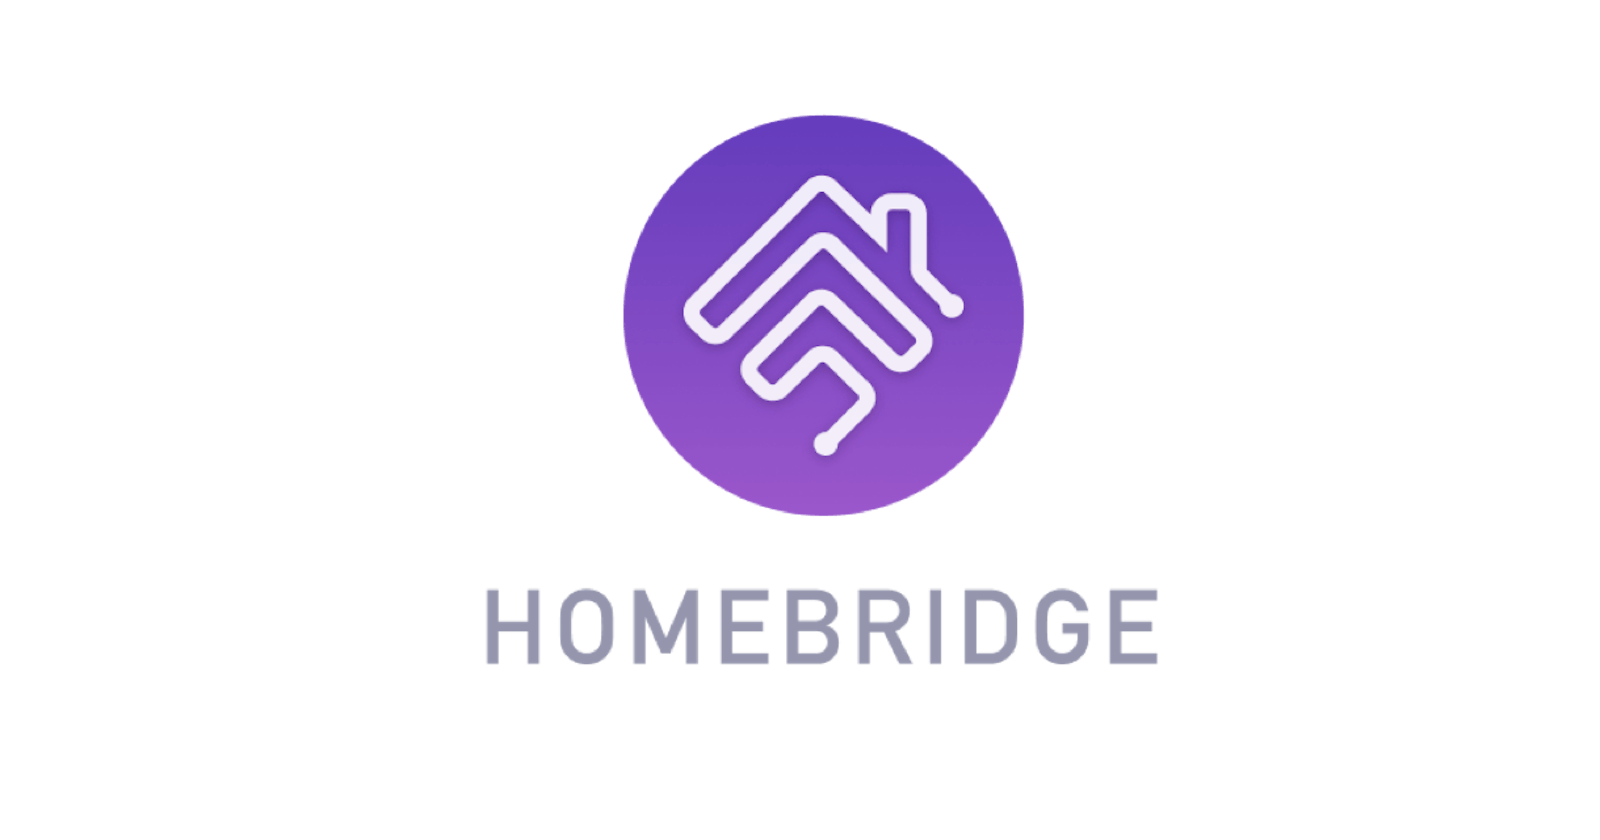 La domotique facile avec Homebridge